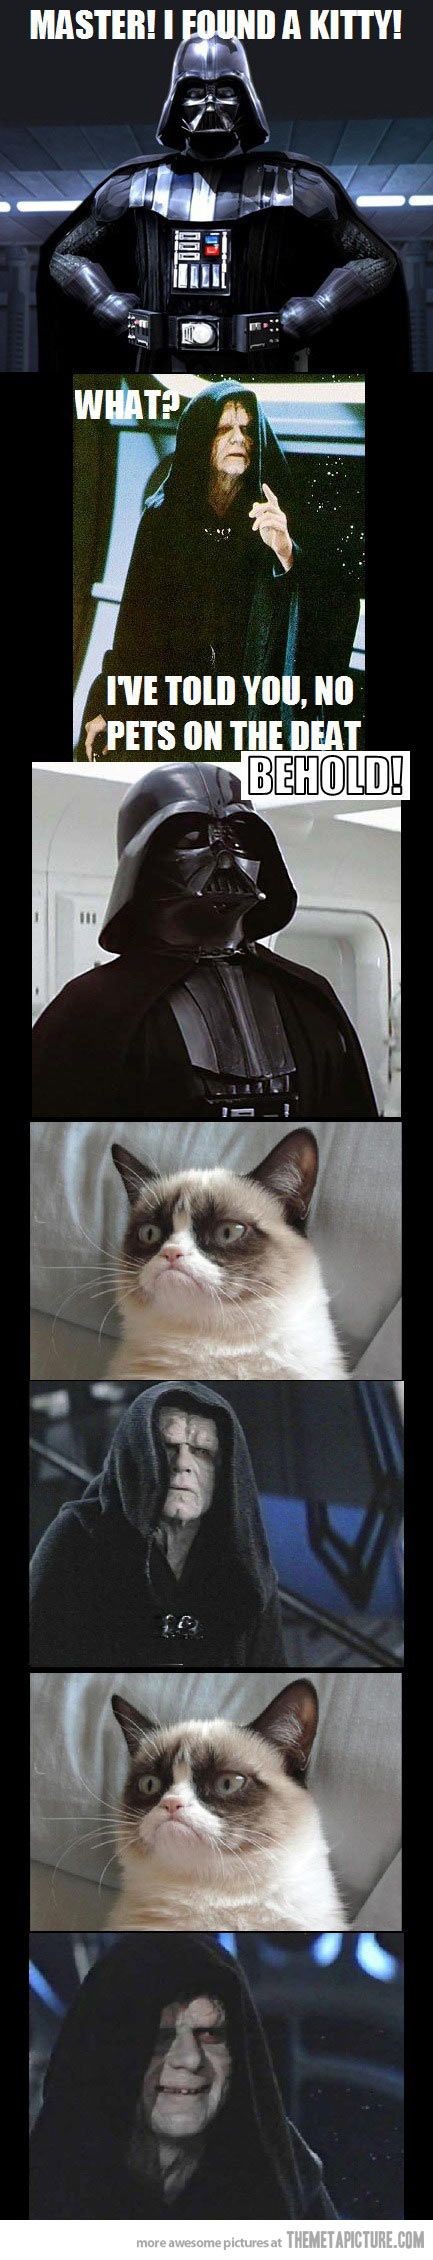 Star Wars meets grumpy cat